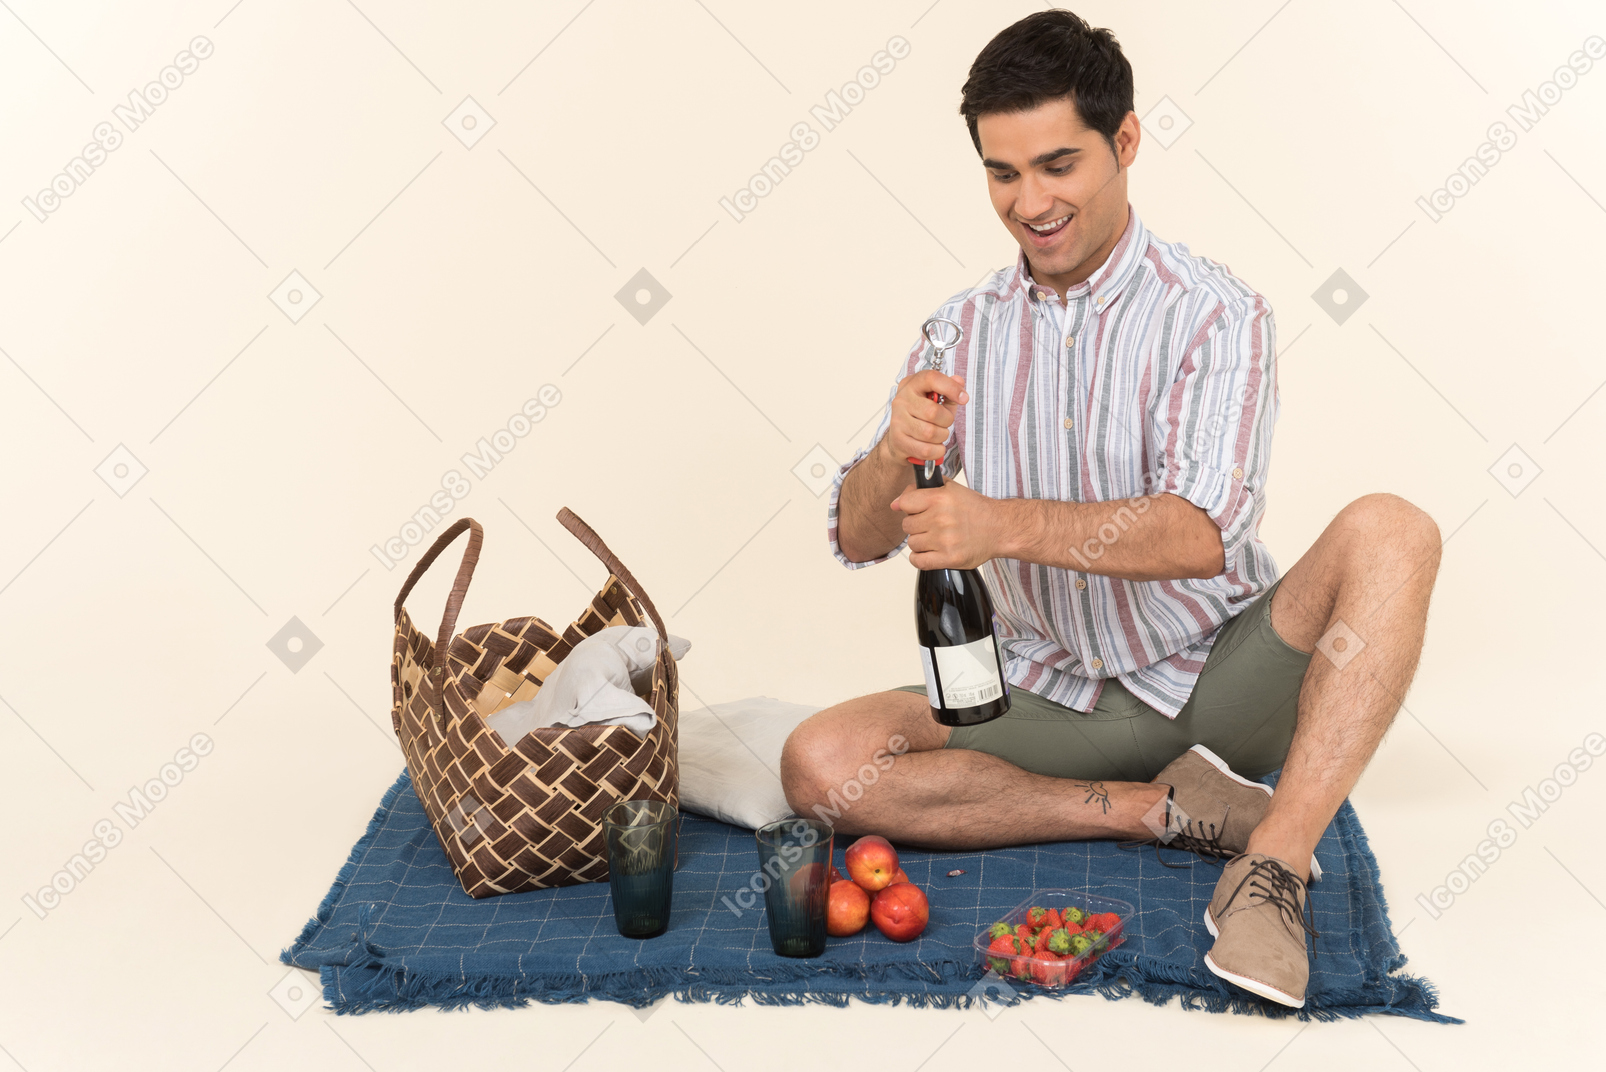 Junger kaukasischer mann, der auf der decke sitzt und flasche wein öffnet